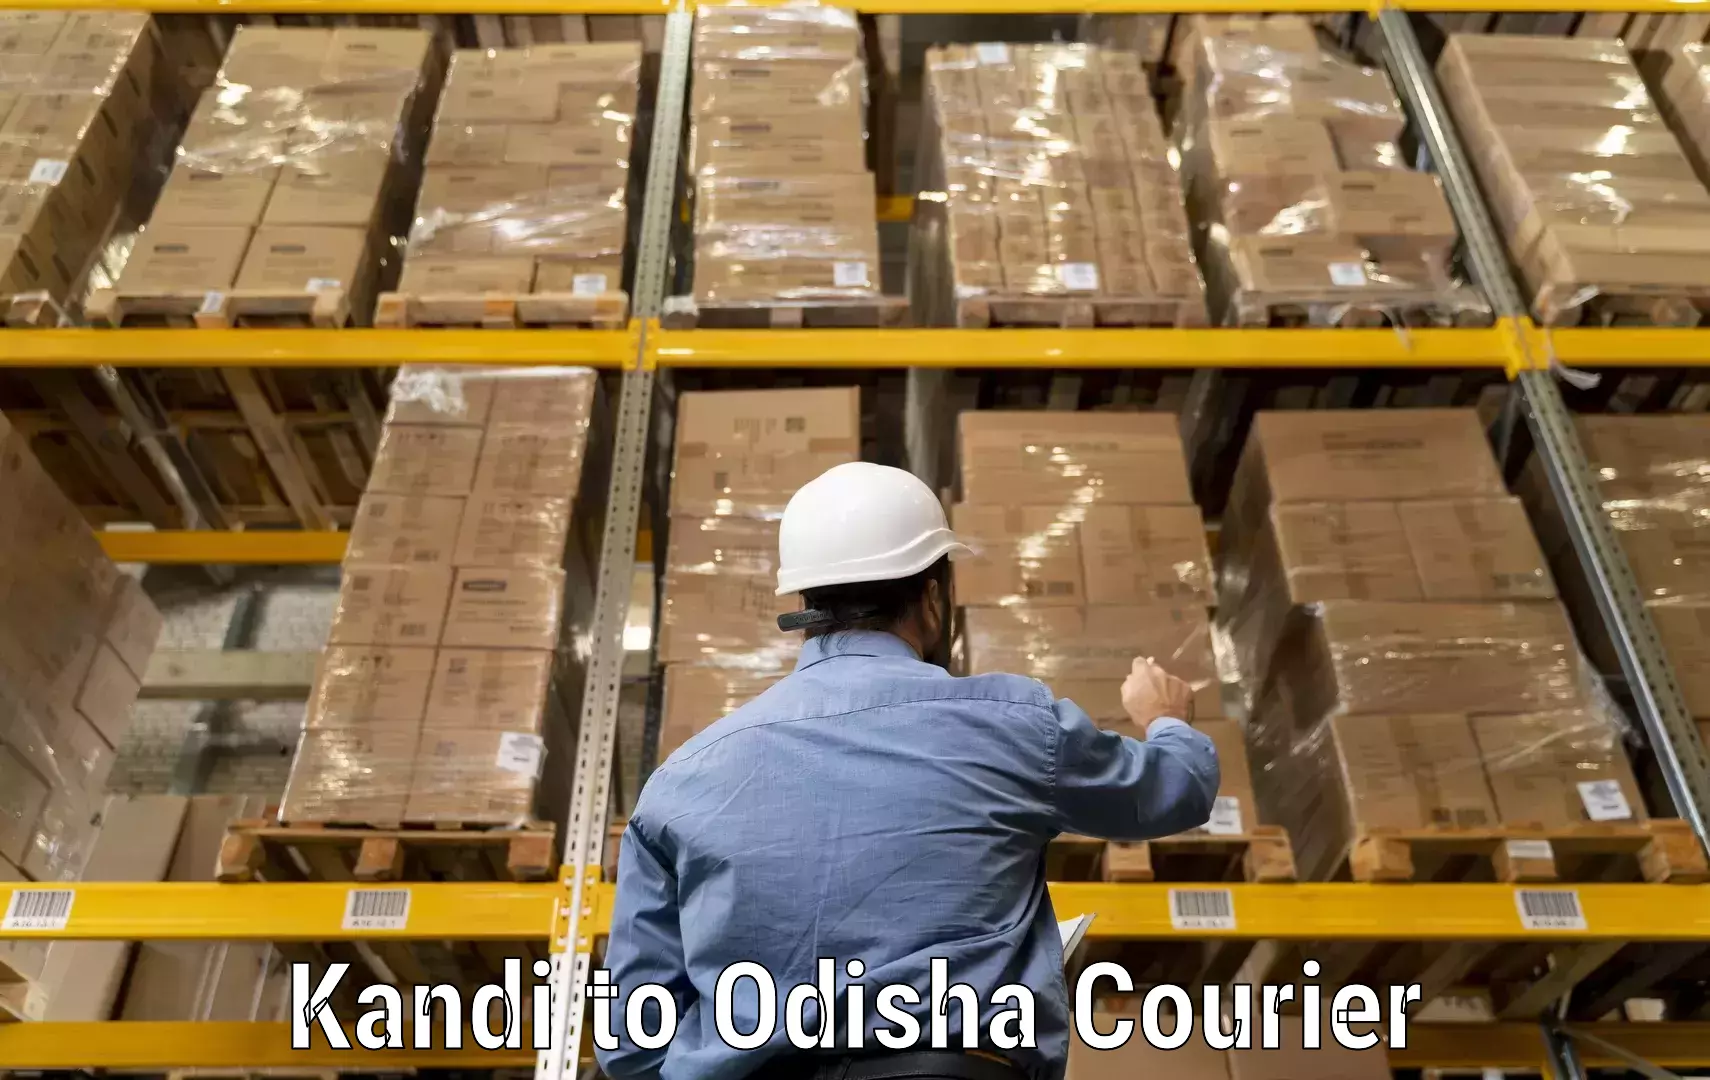 Courier membership in Kandi to Dandisahi